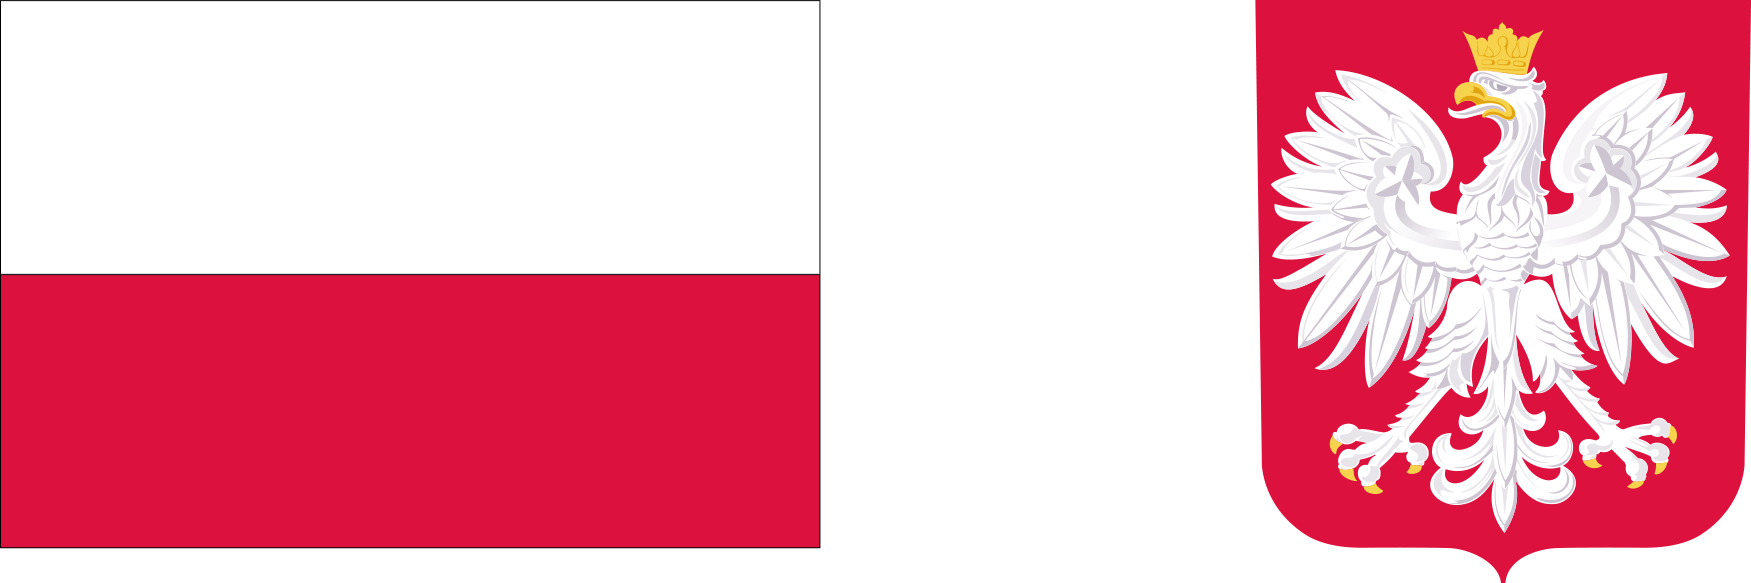 godło i flaga Polski